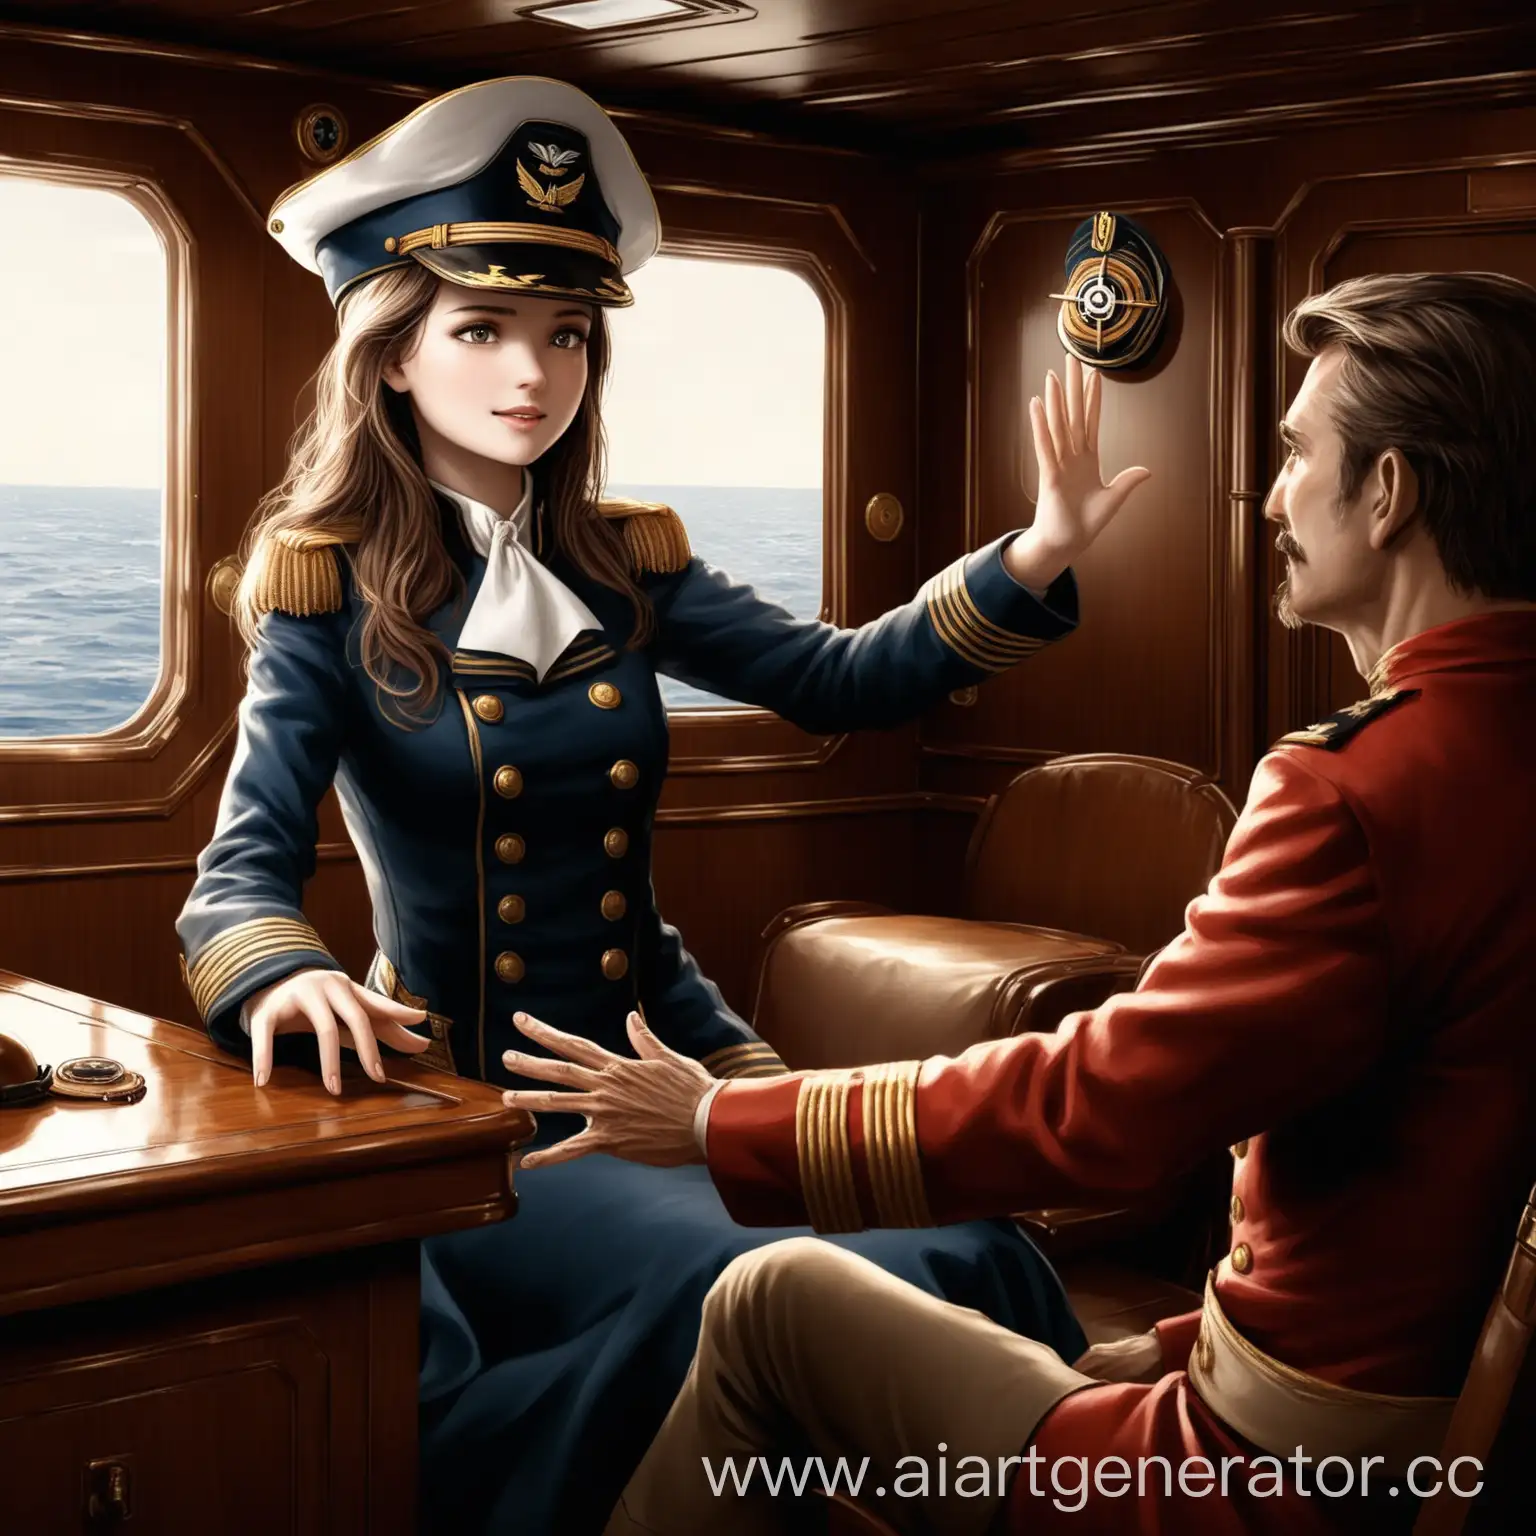 Красивая девушка сидит в каюте капитана с шляпой капитана . Тянет руки к мужчине  , который так же протягивае руки девушке